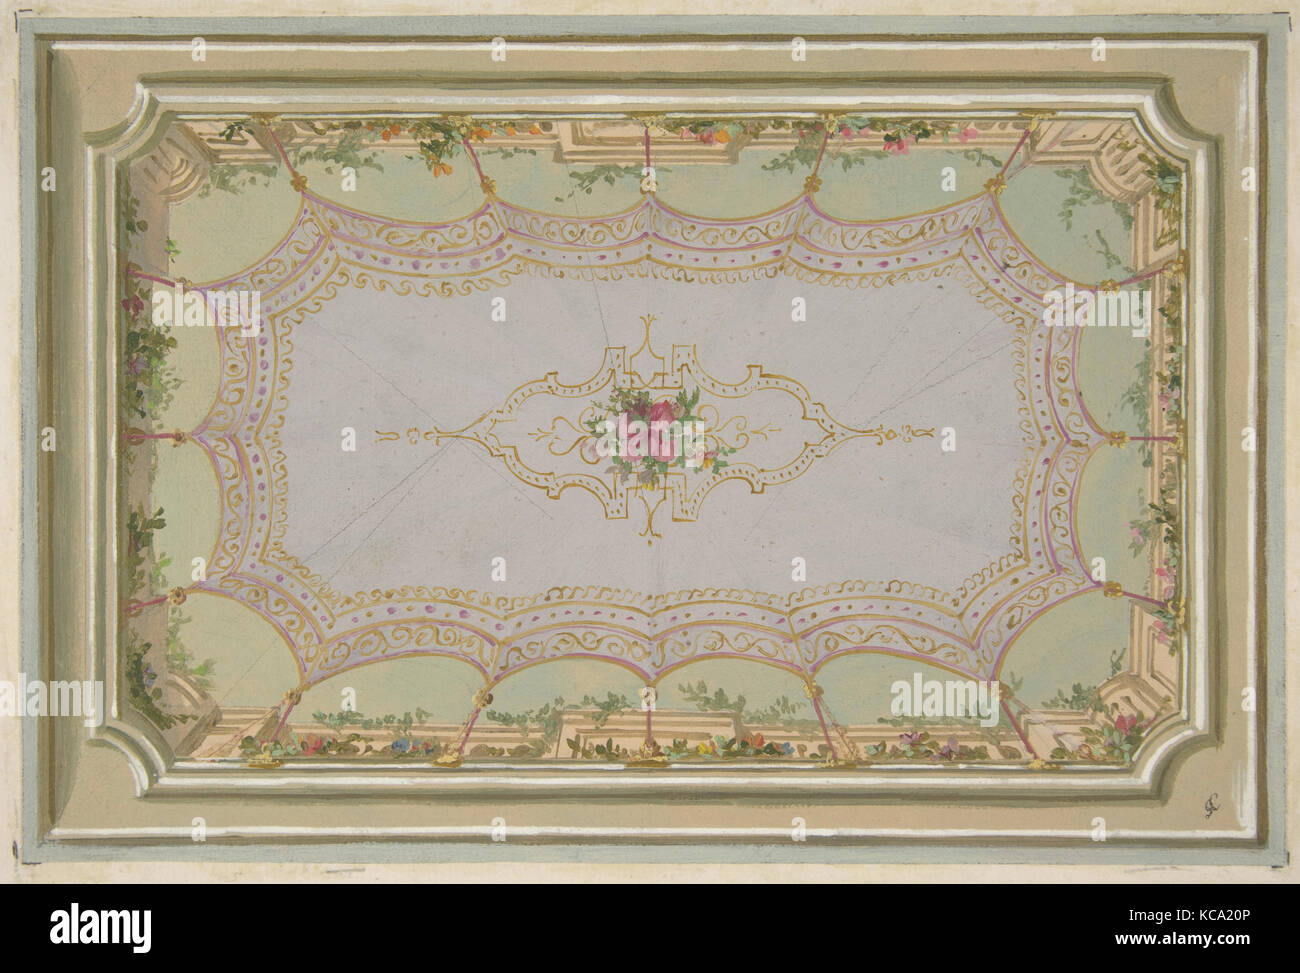 Design pour le décor peint d'un plafond avec un trompe-l'oeil couvert et roses, Jules-Edmond-Charles Lachaise, 1830-97 Banque D'Images